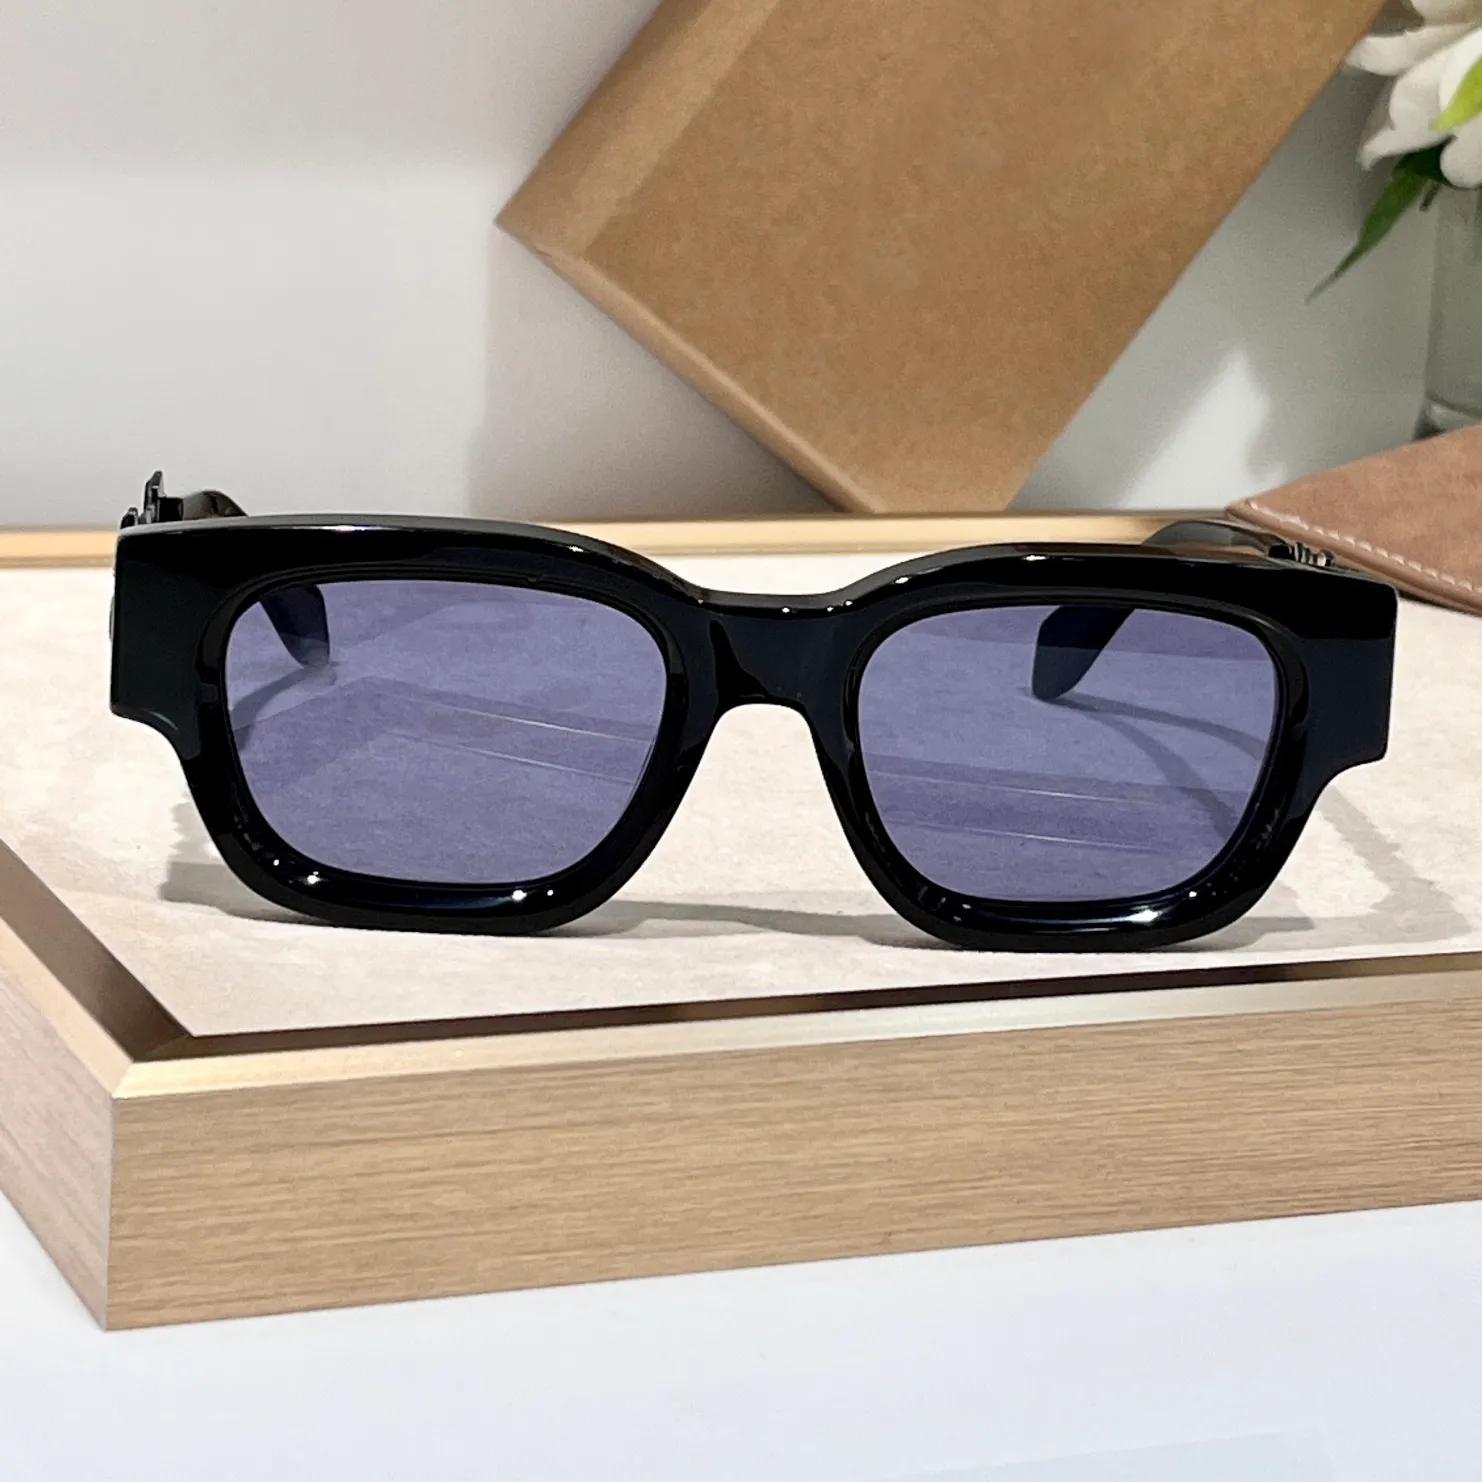 Lunettes de soleil carrées noires / bleu hommes femmes teintures d'été lunettes lunettes de soleil verres occhiali da seme uv400 eyewear